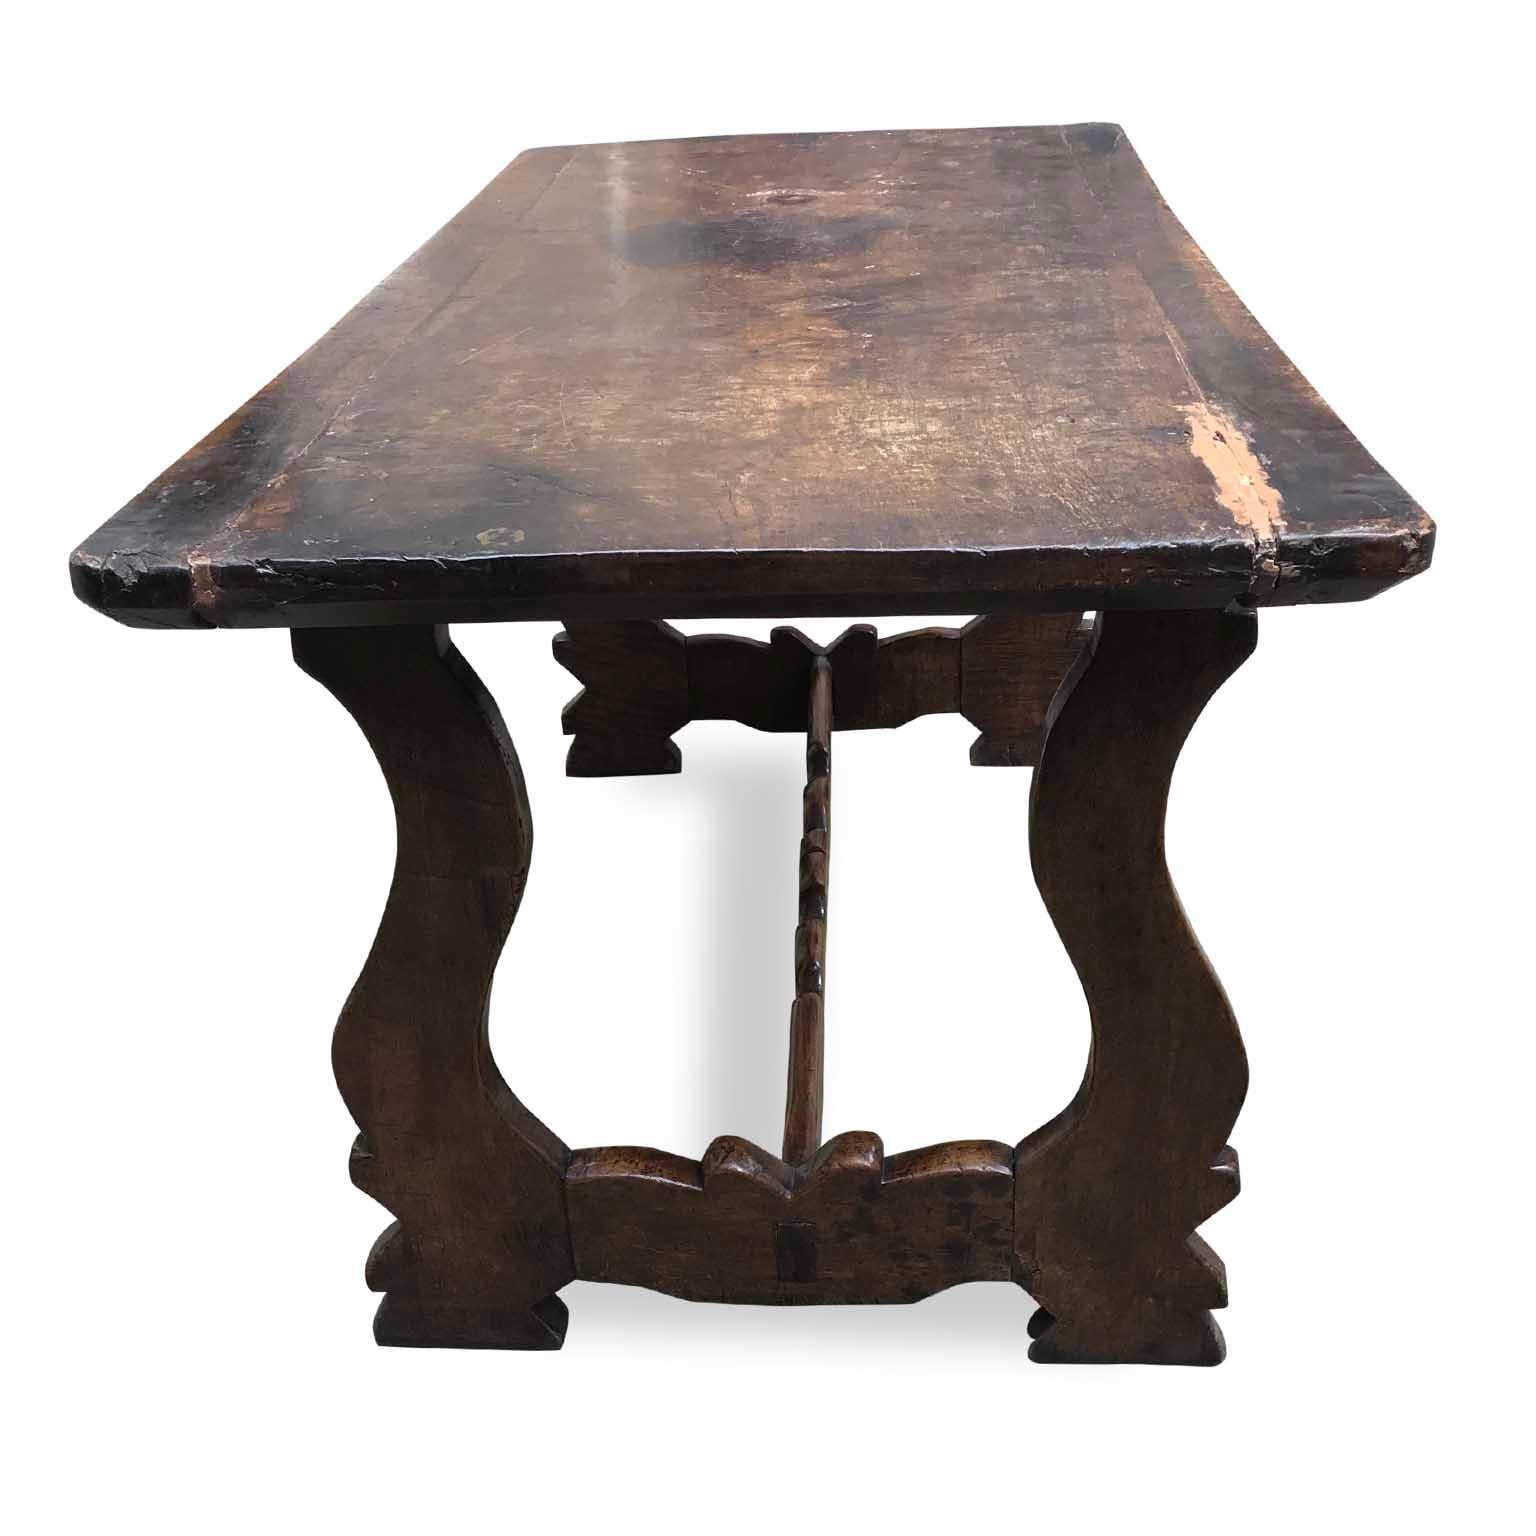 Une table Fratino en noyer de style Renaissance italienne du 18ème siècle provenant d'une maison privée de Milan. 
Née en Italie durant la première moitié du XVIIIe siècle, cette exquise table en noyer massif présente un plateau rectangulaire,